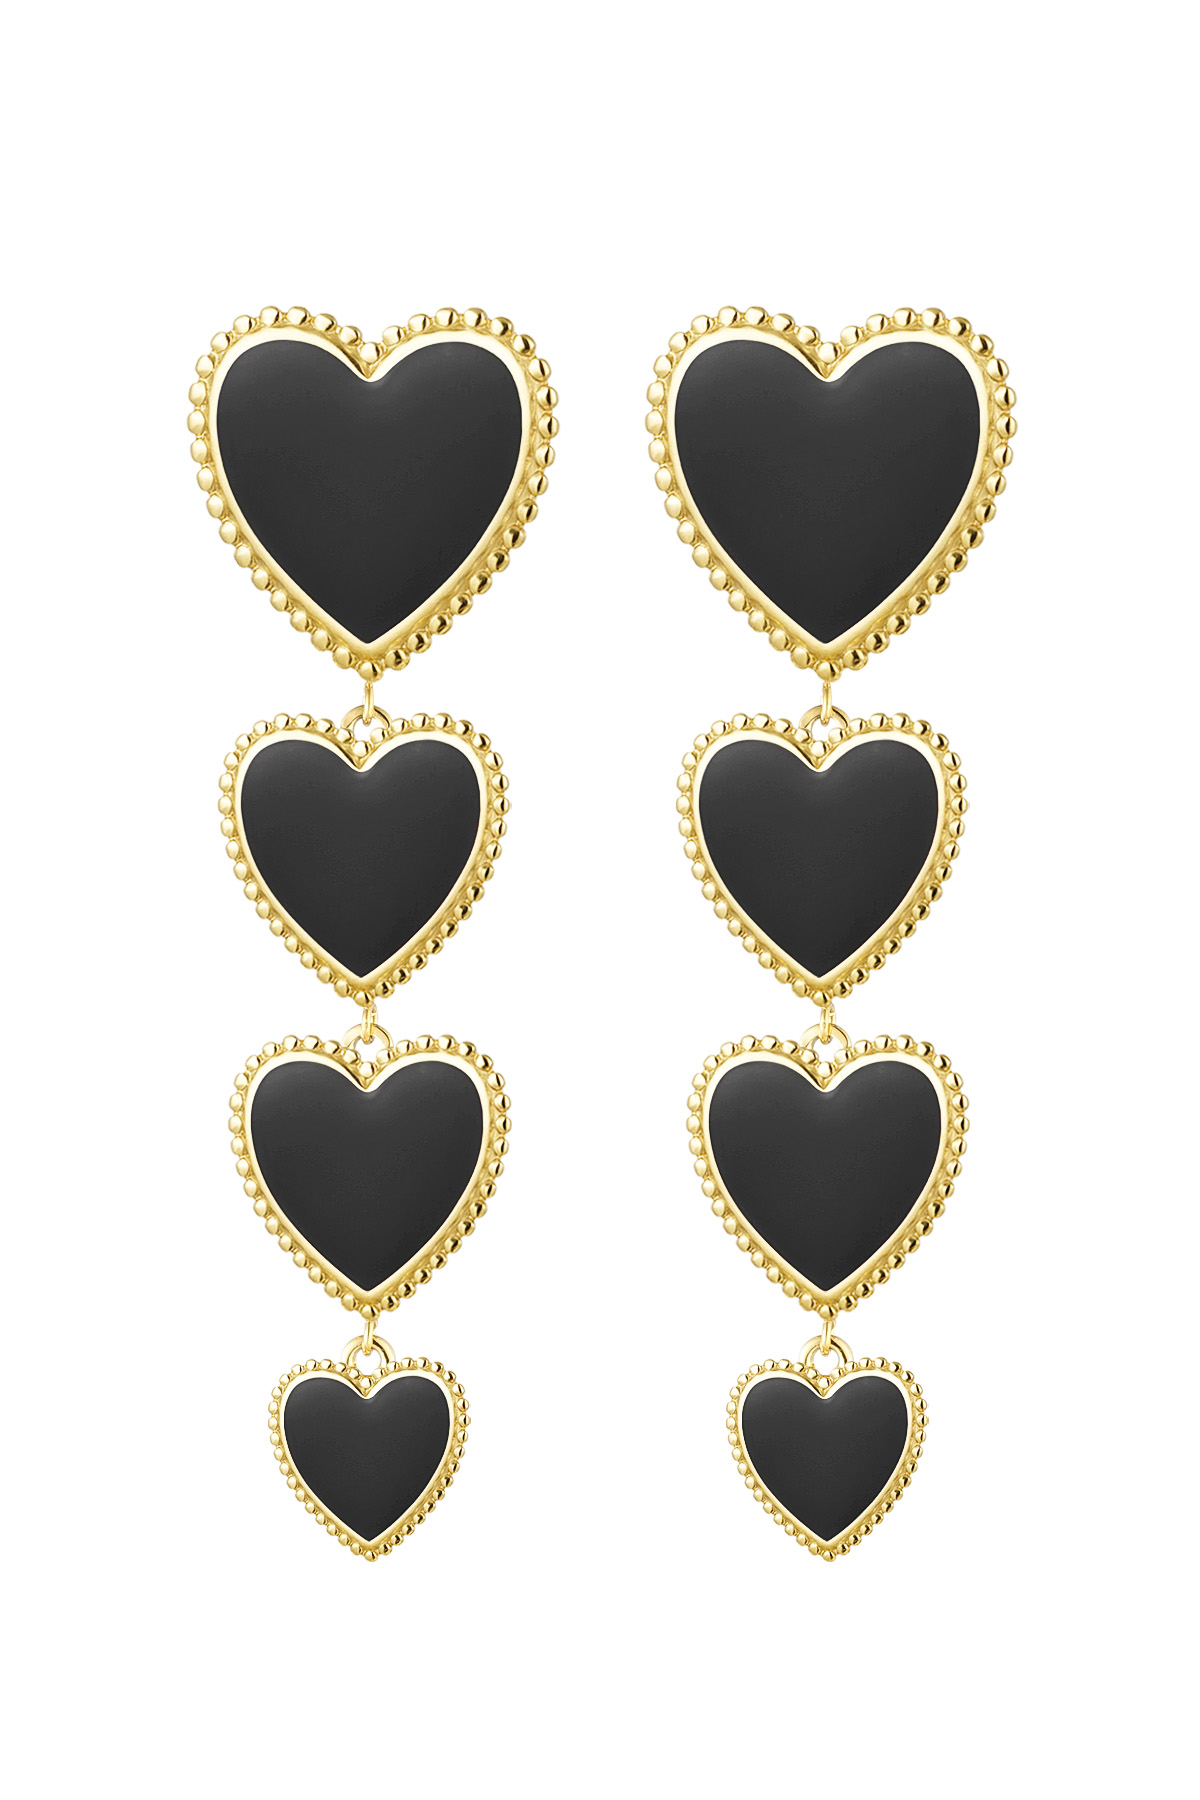 Earrings hearts 4 in a row - black 